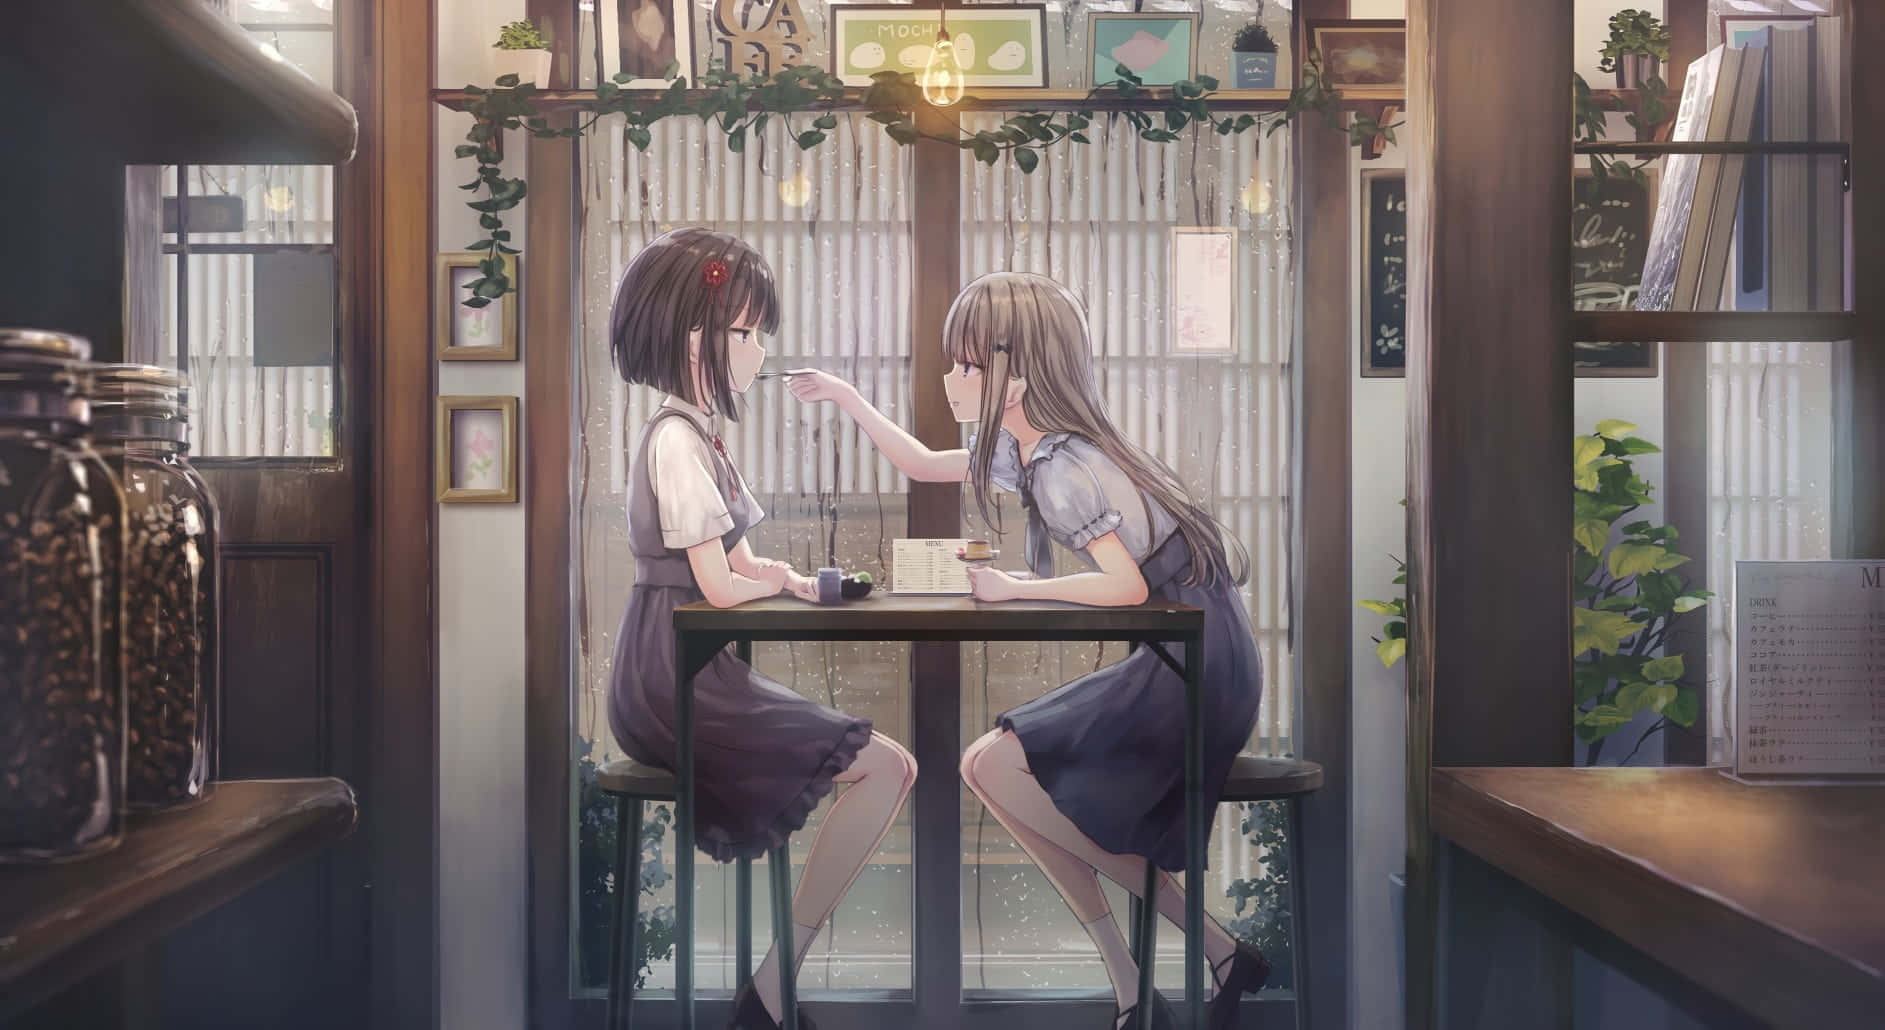 Njutav Din Favorit Anime Med En Ljuvligt Uppfriskande Kopp Kaffe På Café Anime. Wallpaper